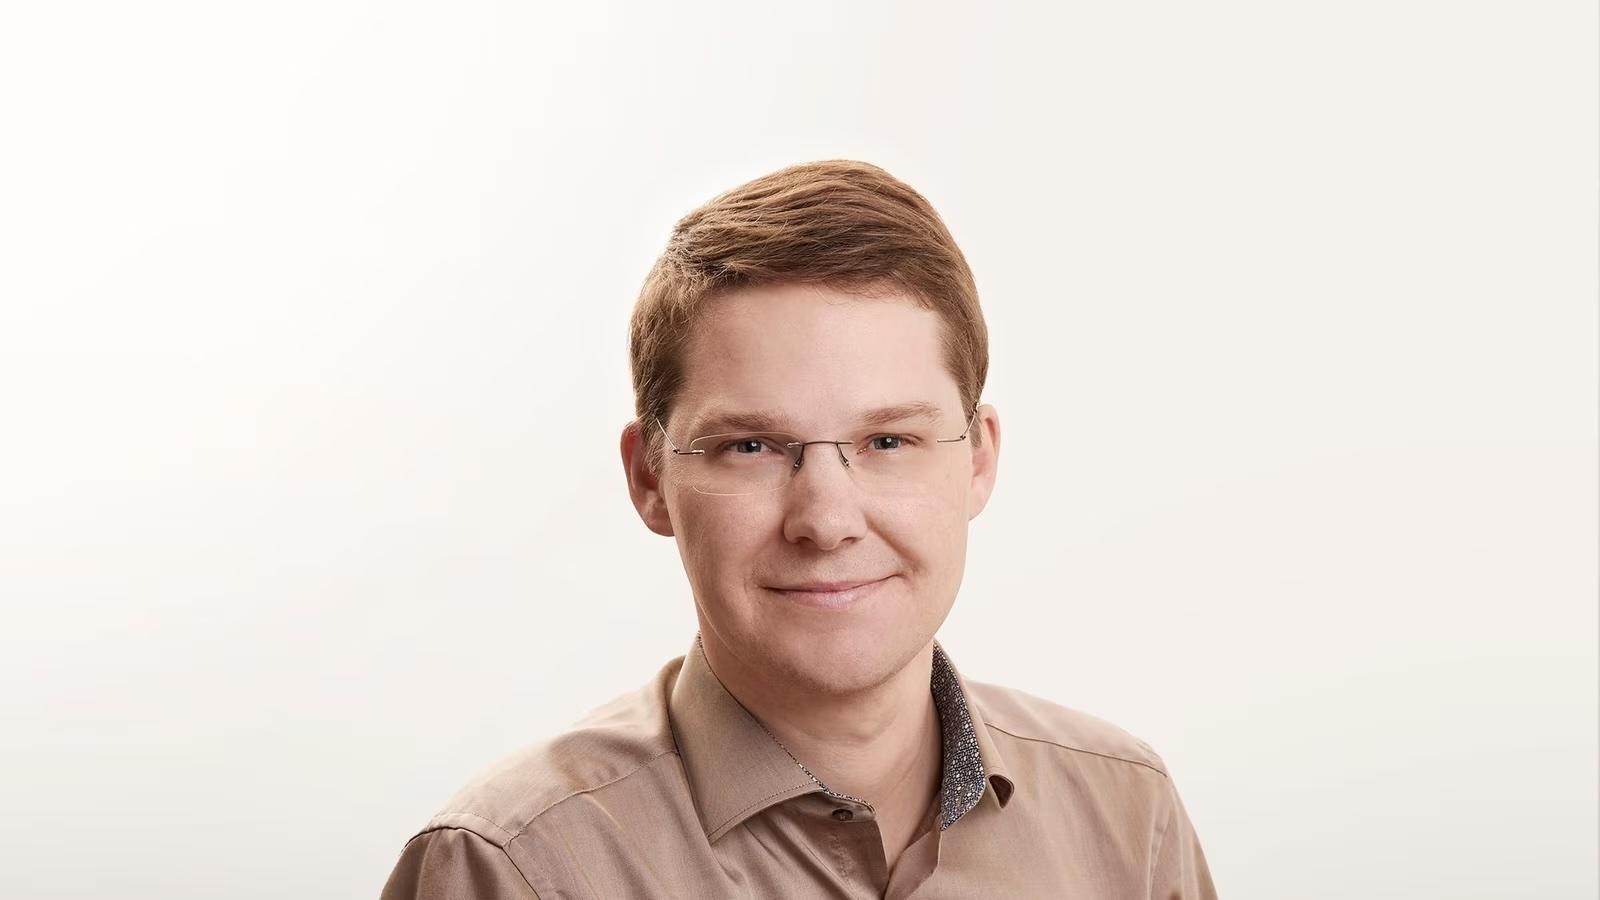 Tobias Keller est spécialiste des médias et des sciences politiques auprès de l’institut de sondage gfs.bern. [zVg]